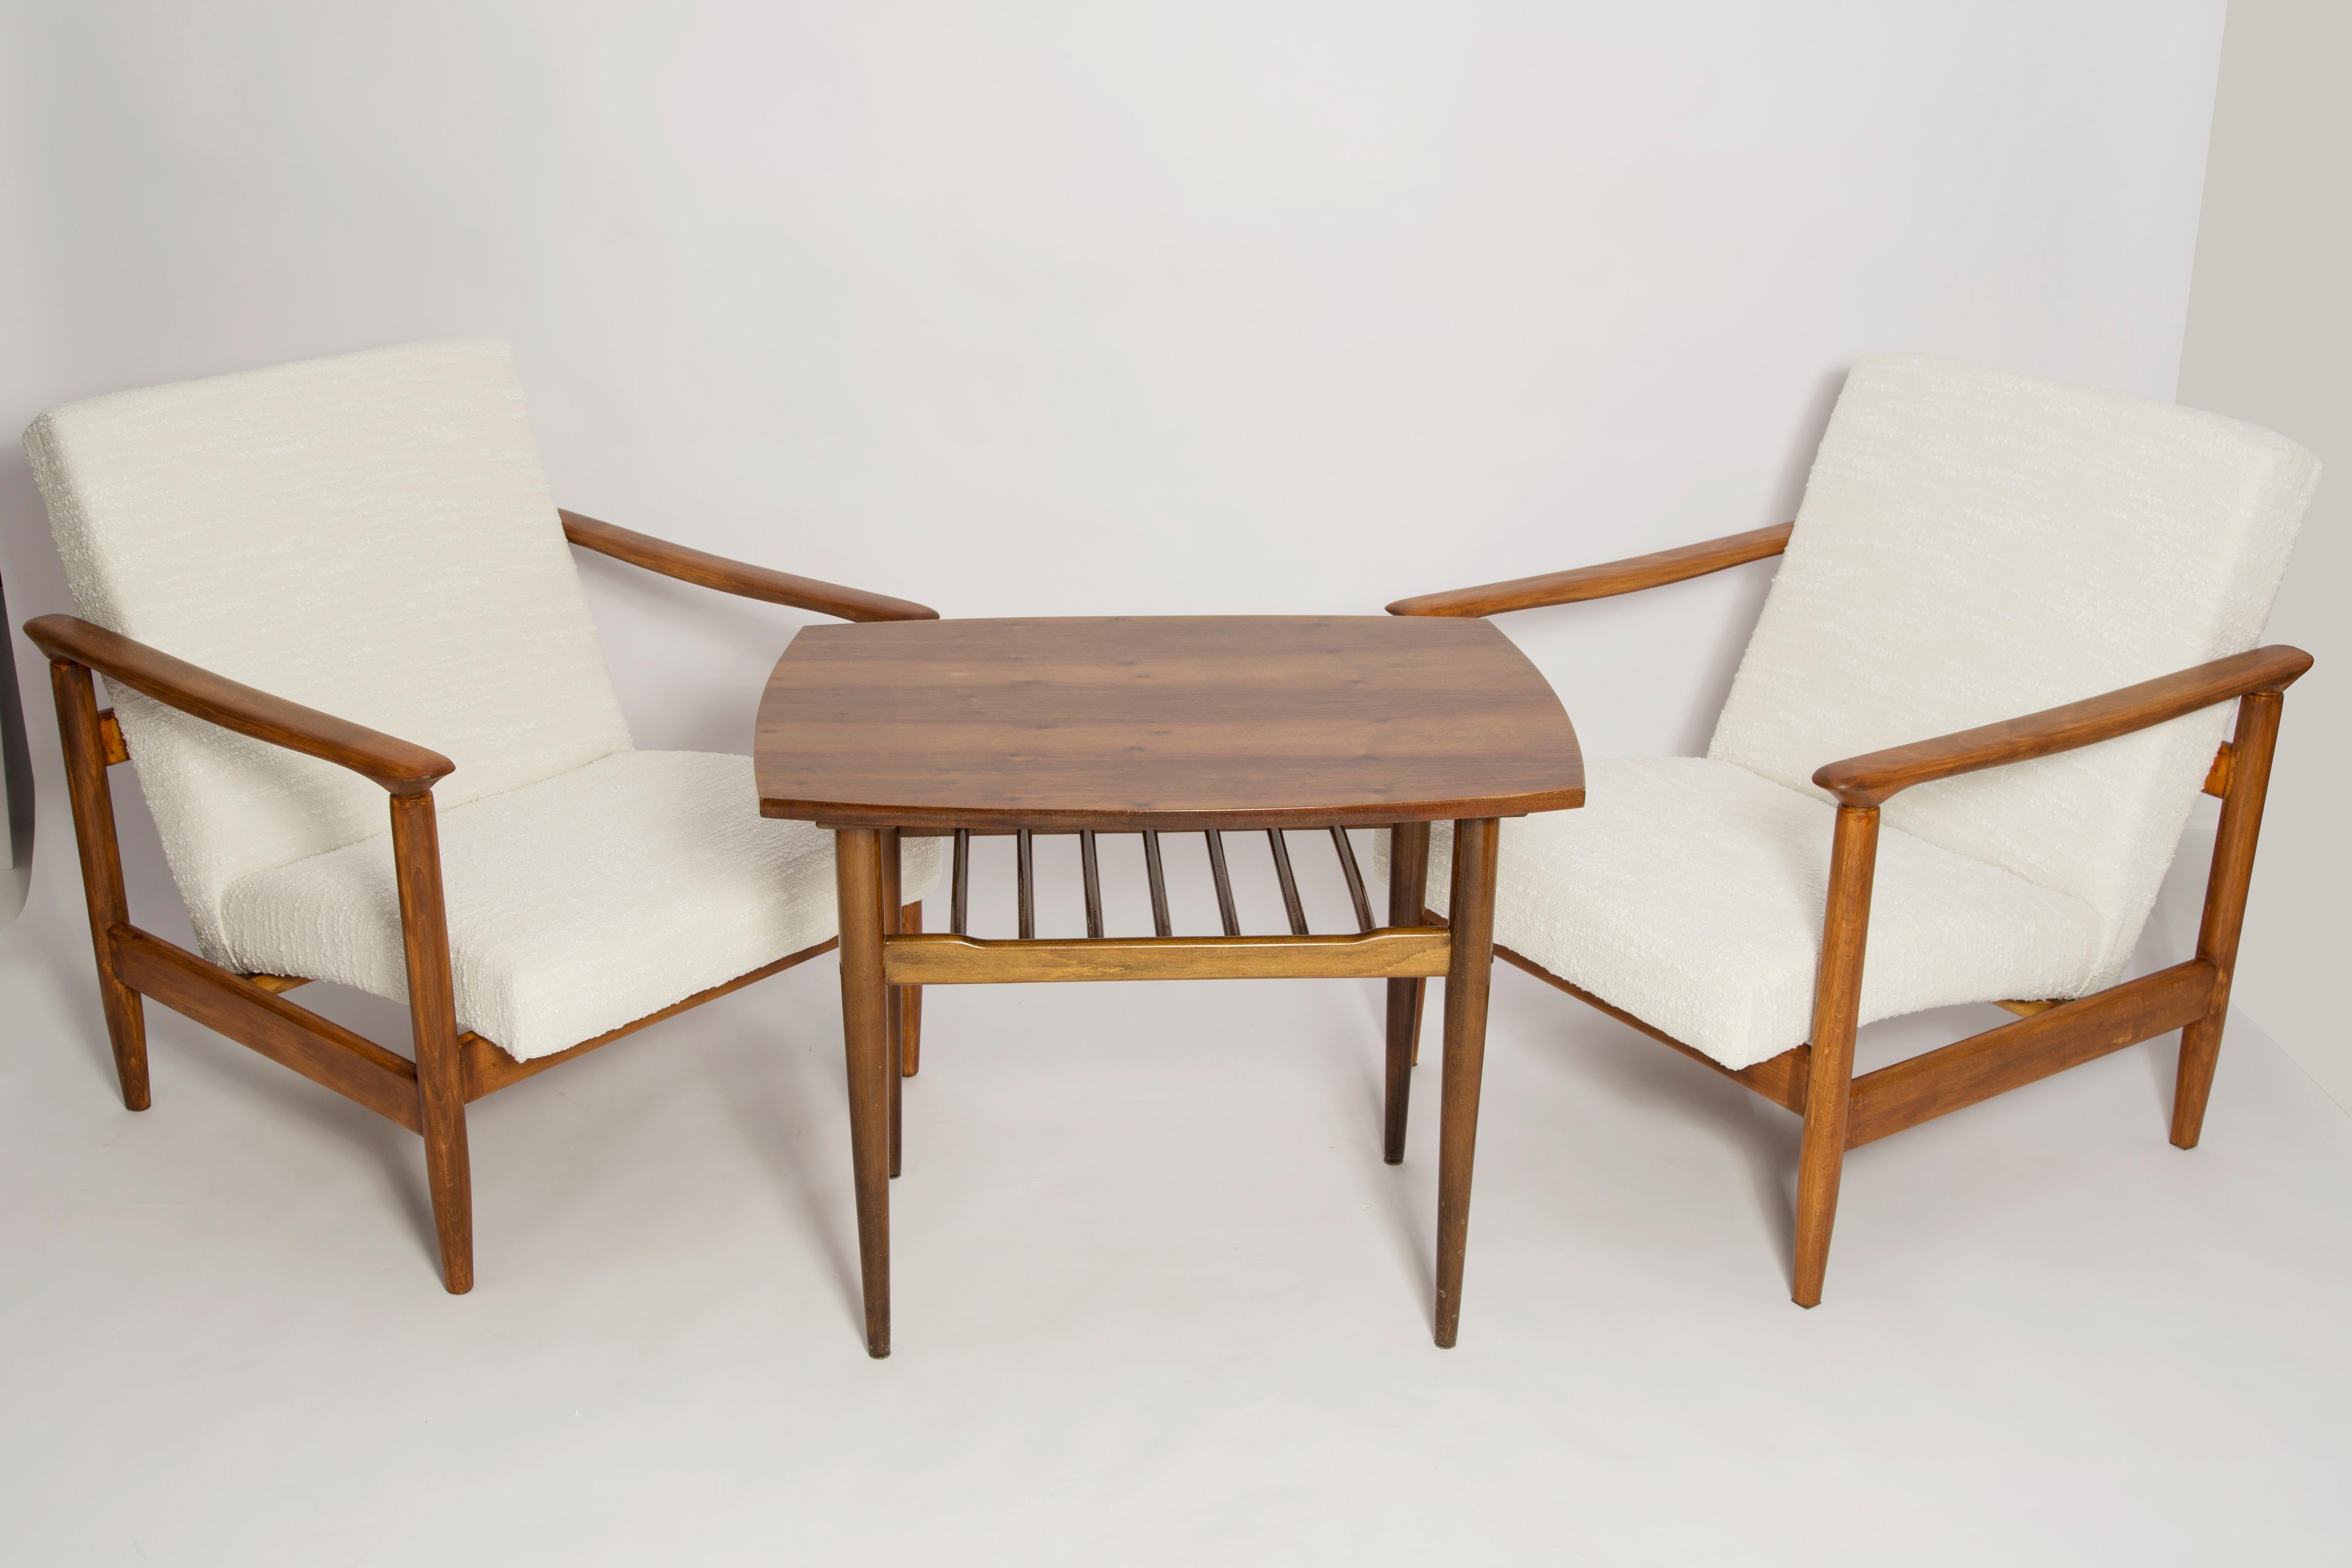 Schöner weißer Boucle-Sessel GFM-142, entworfen von Edmund Homa, einem polnischen Architekten, Designer von Industriedesign und Innenarchitektur, Professor an der Akademie der Schönen Künste in Danzig. 

Der Sessel wurde in den 1960er Jahren in